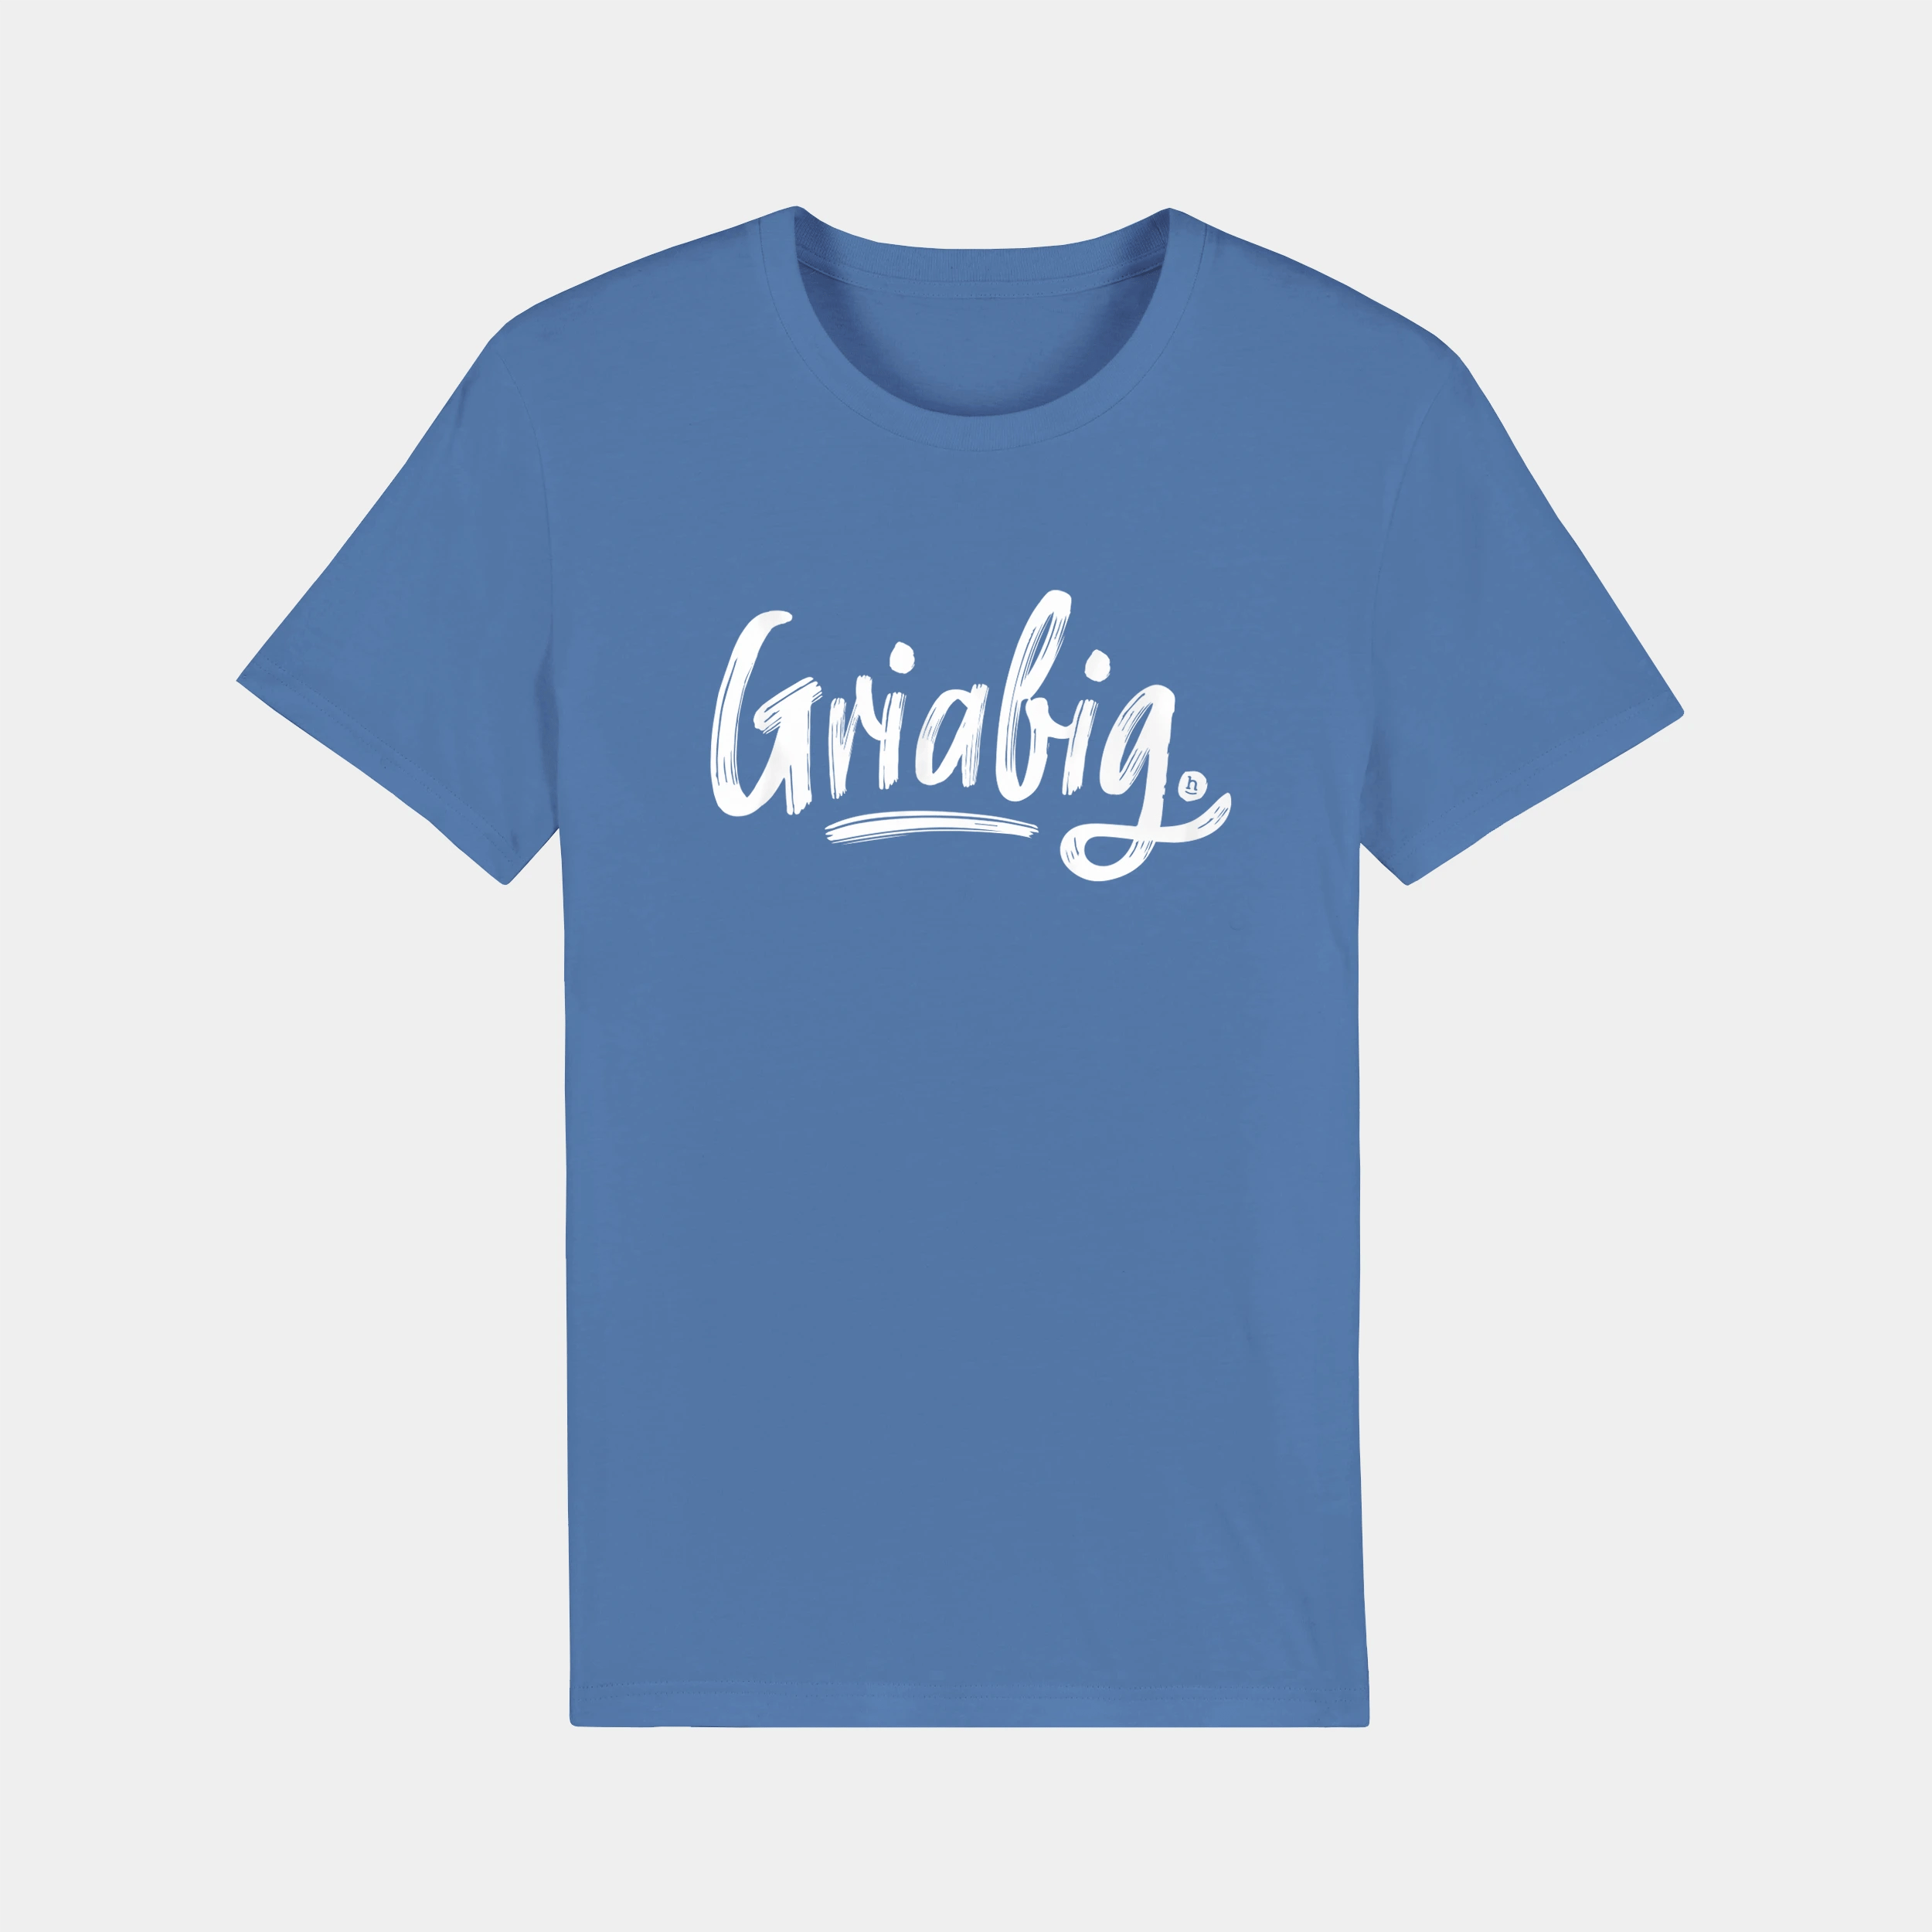 HEITER & LÄSSIG T-Shirt "Griabig" - aus nachhaltiger und fairer Produktion